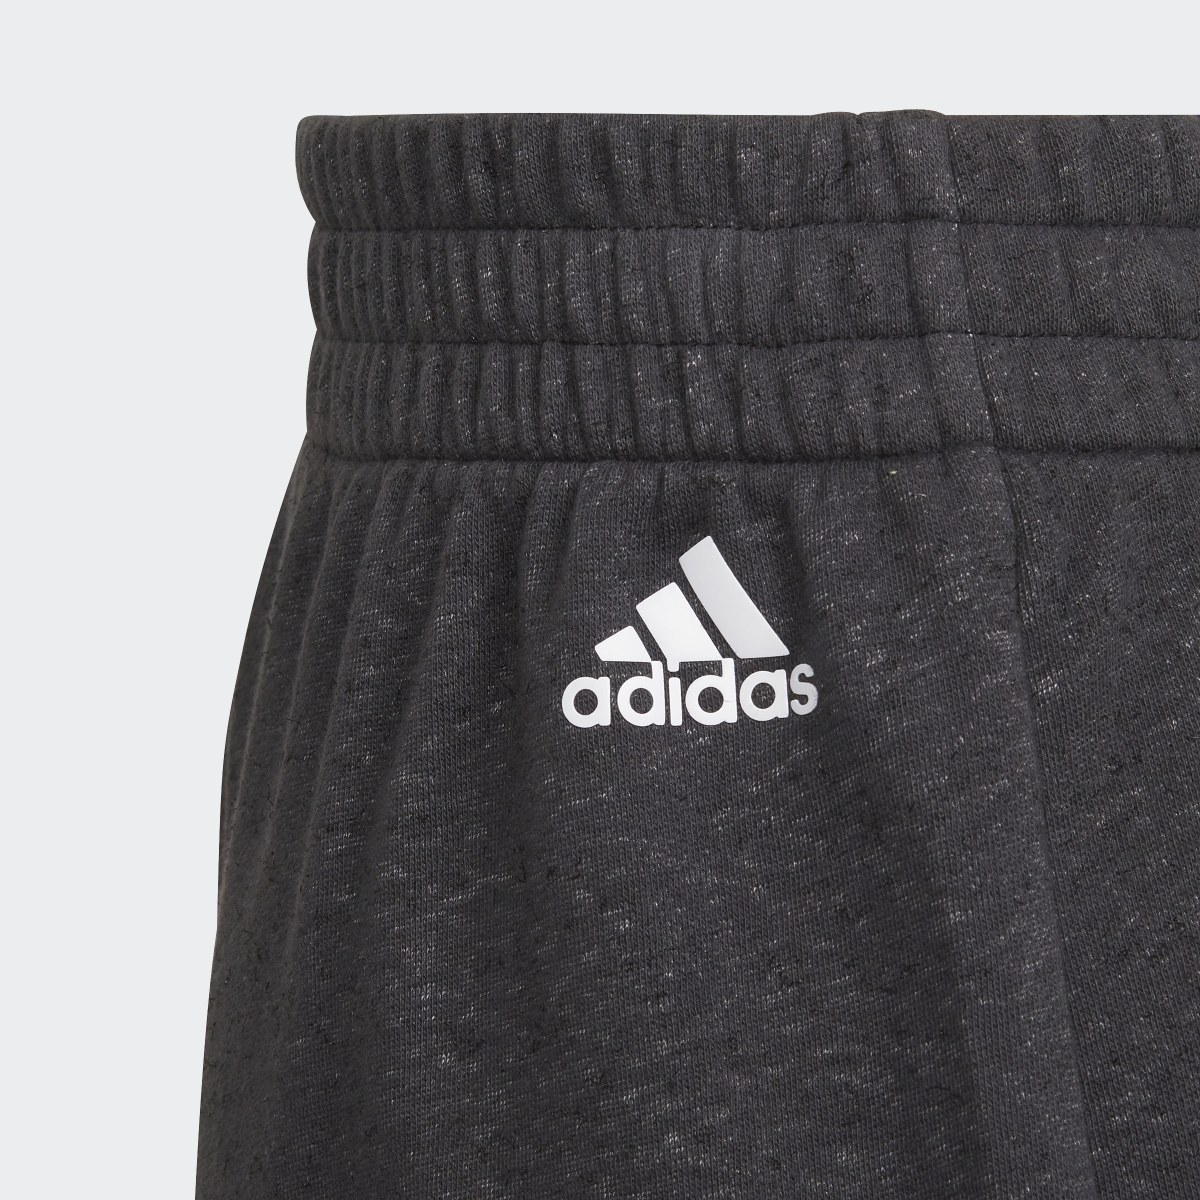 Adidas Future Icons 3-Streifen Loose Cotton Shorts. 5